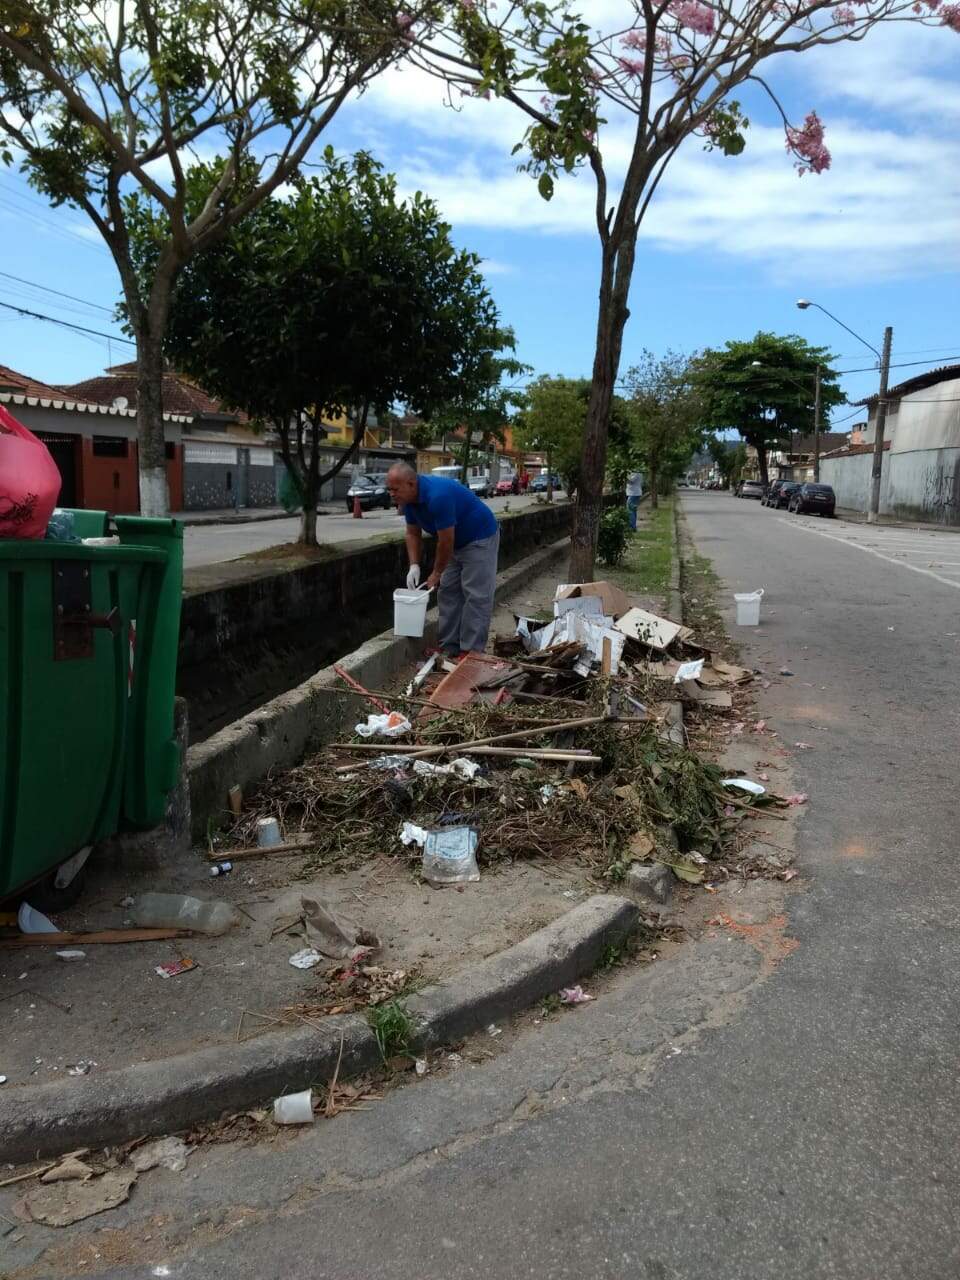 Serviços de desratização continuam em Guarujá